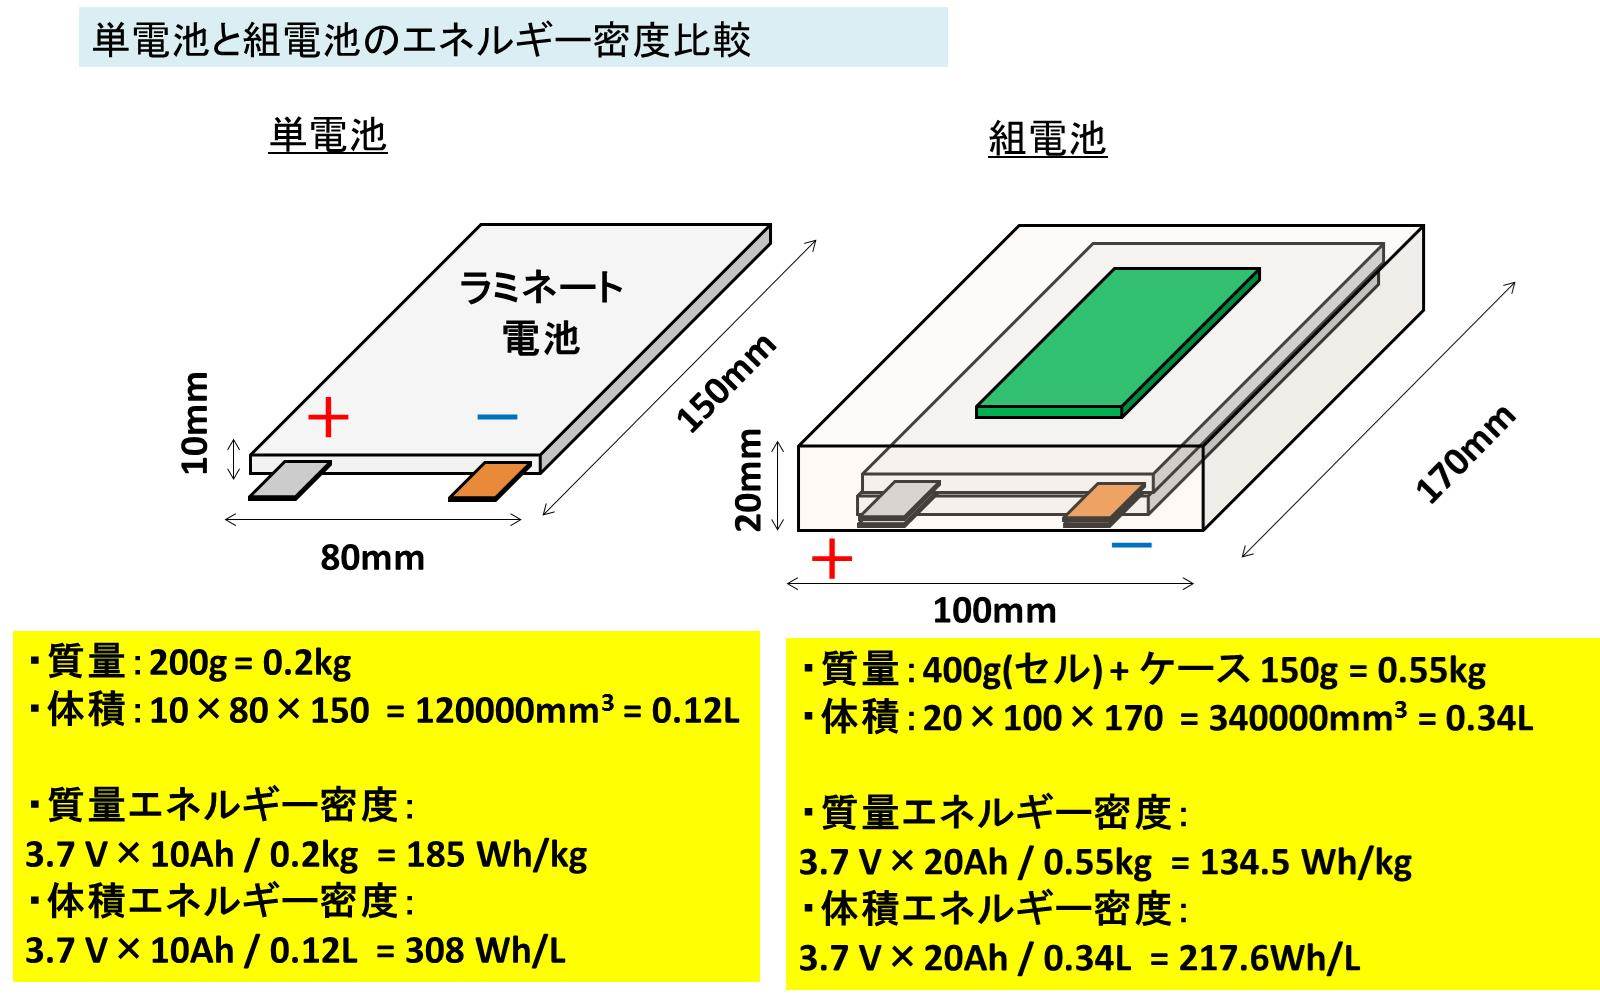 リチウムイオン電池の組電池とは 組電池の接続方法と容量 電圧